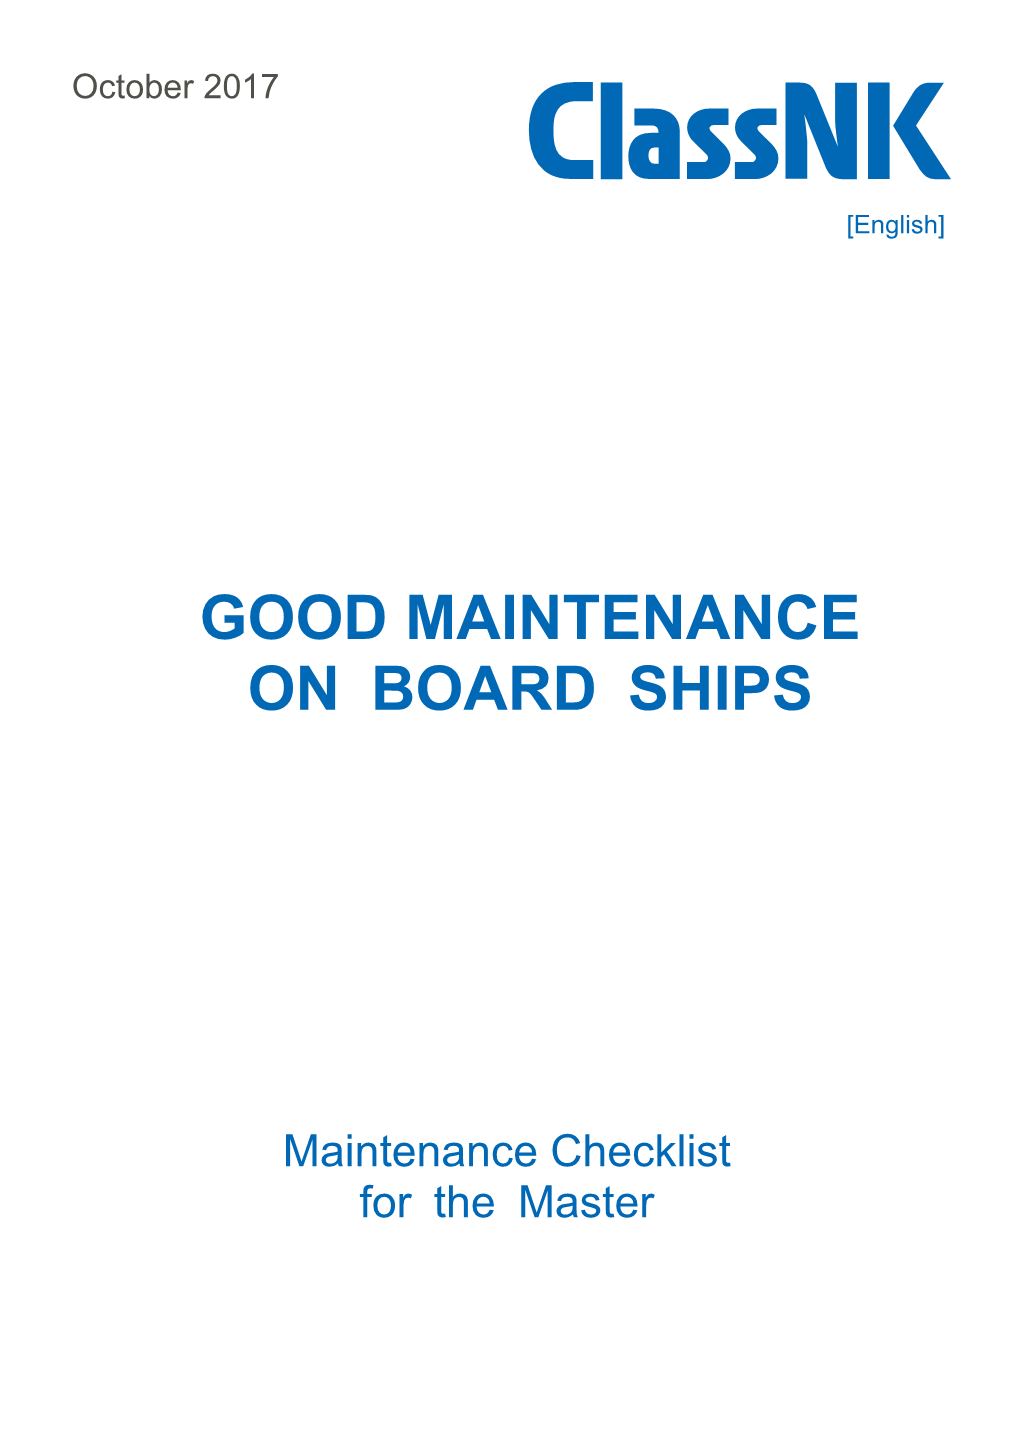 Good Maintenance on Board Ships